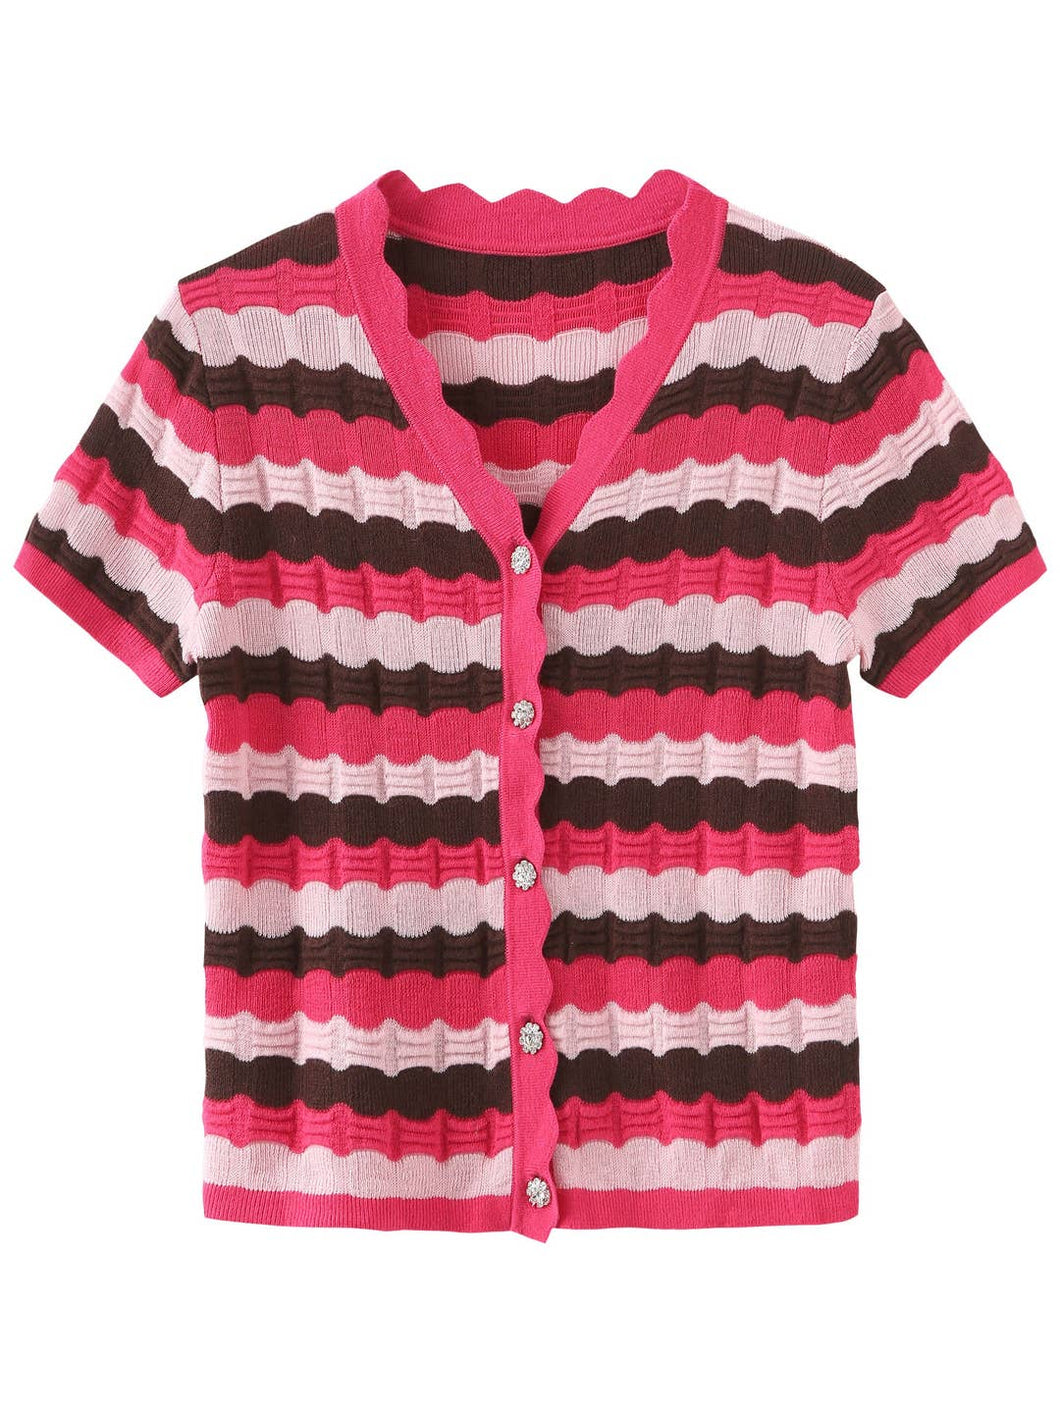 Cubic SS striped knit cardigan (SZ S-L)